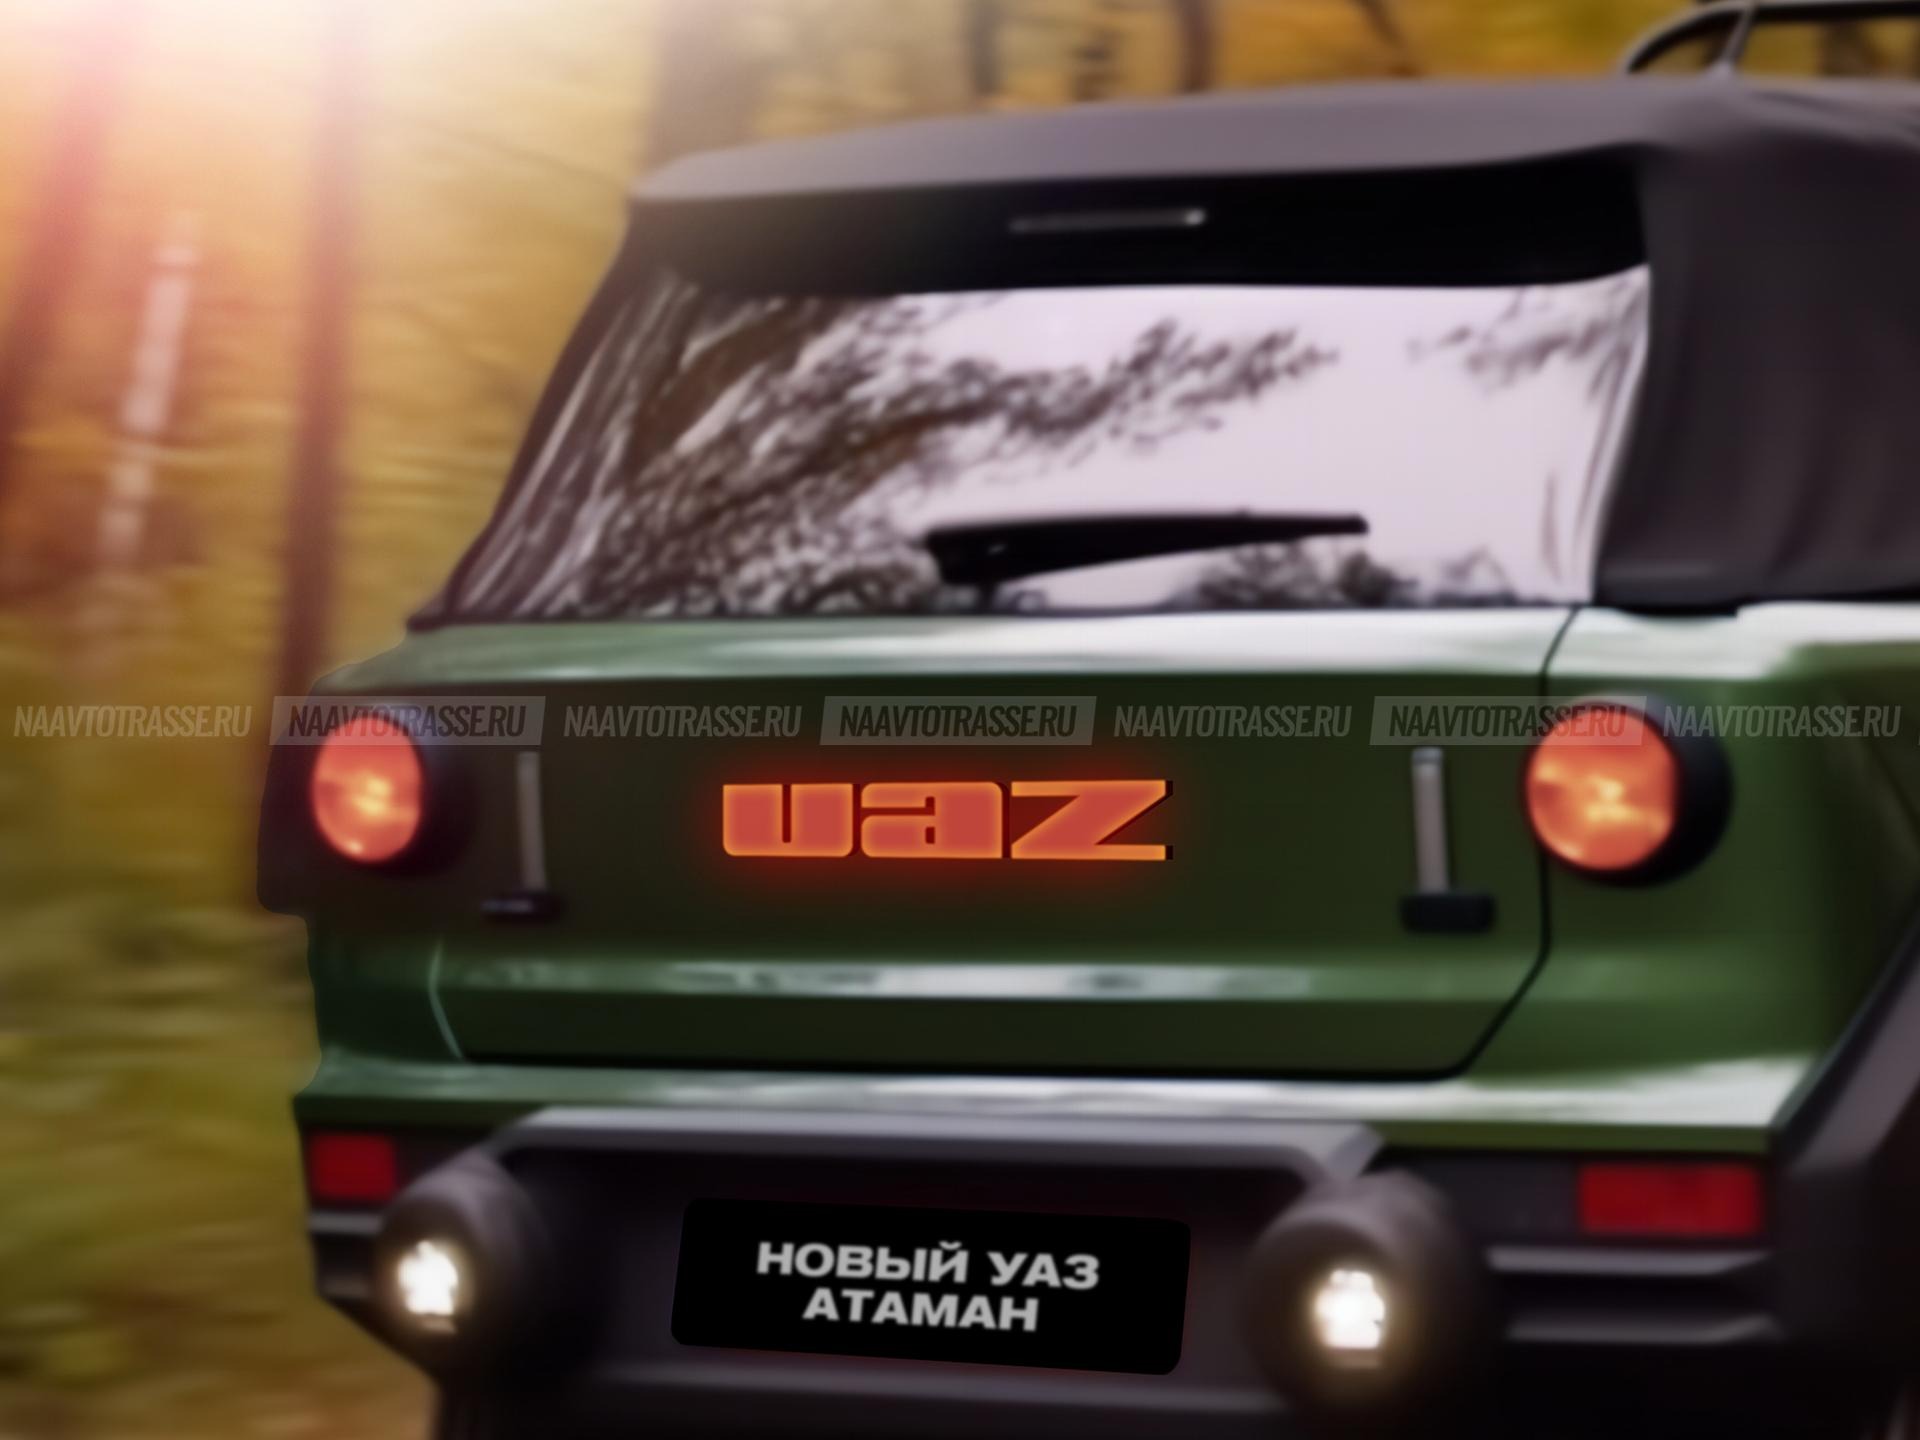 Прототип первого российского кроссовера УАЗ-4213 «Атамань» дебютировал в Интернете